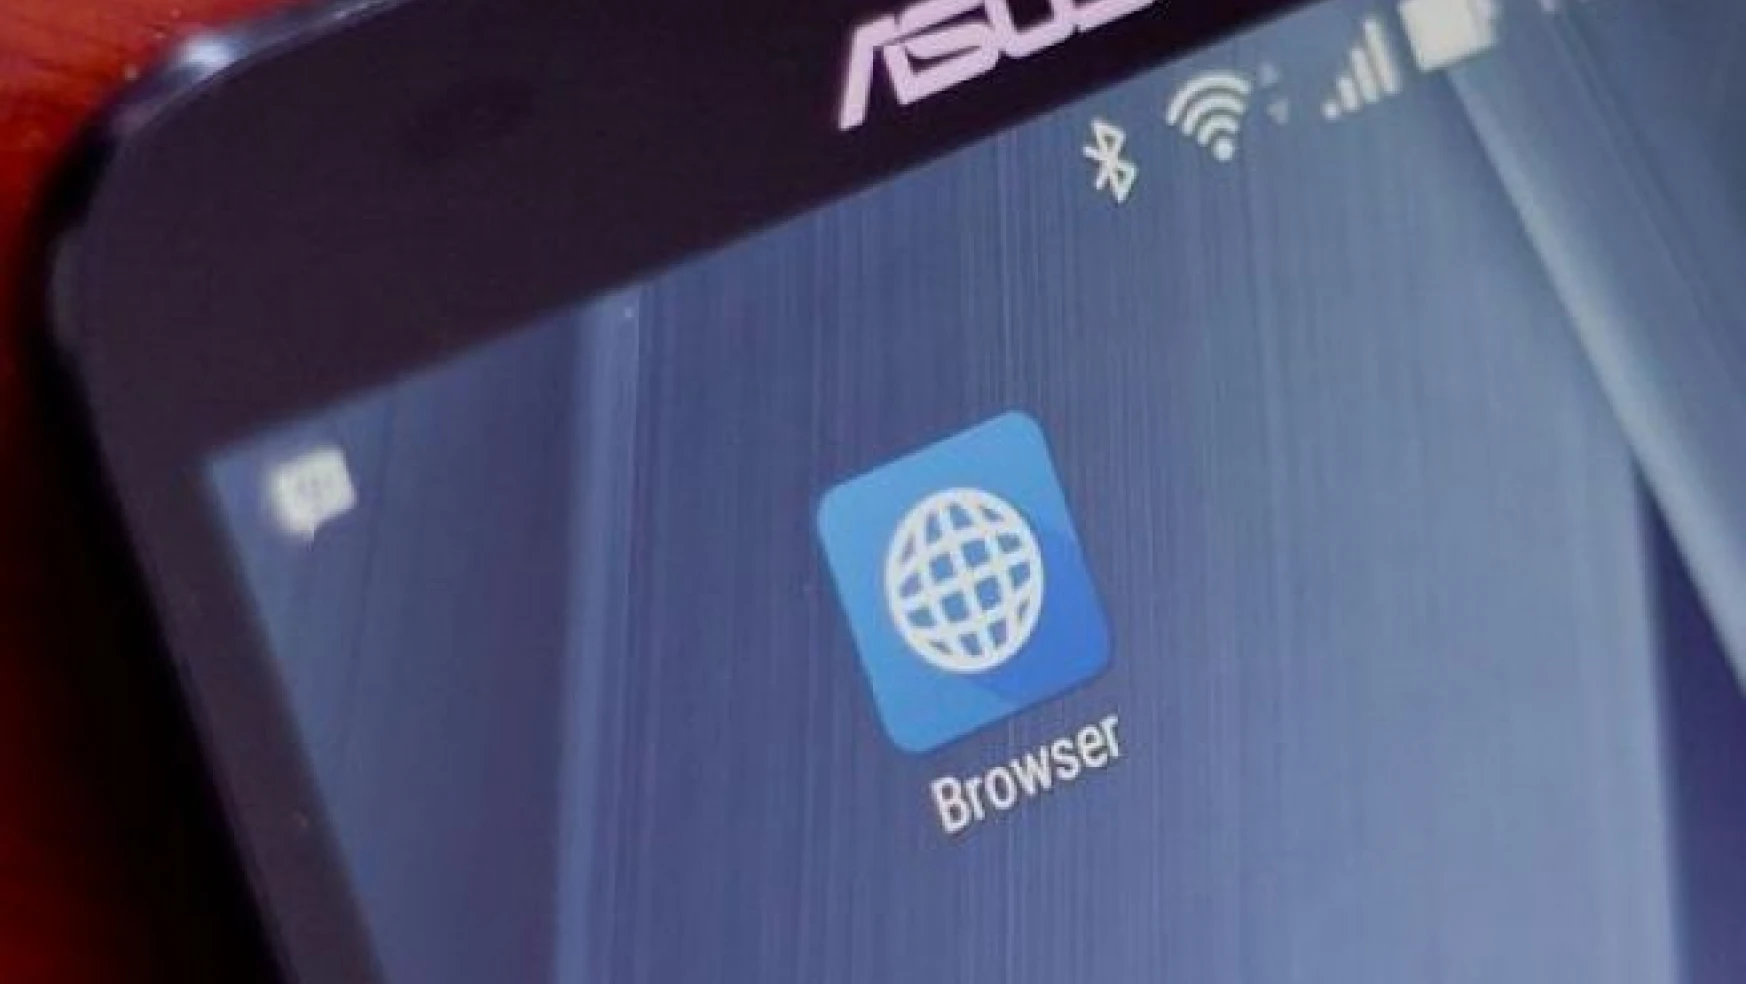 Asus mobil cihazlarda reklamlar gösterimini engelliyor